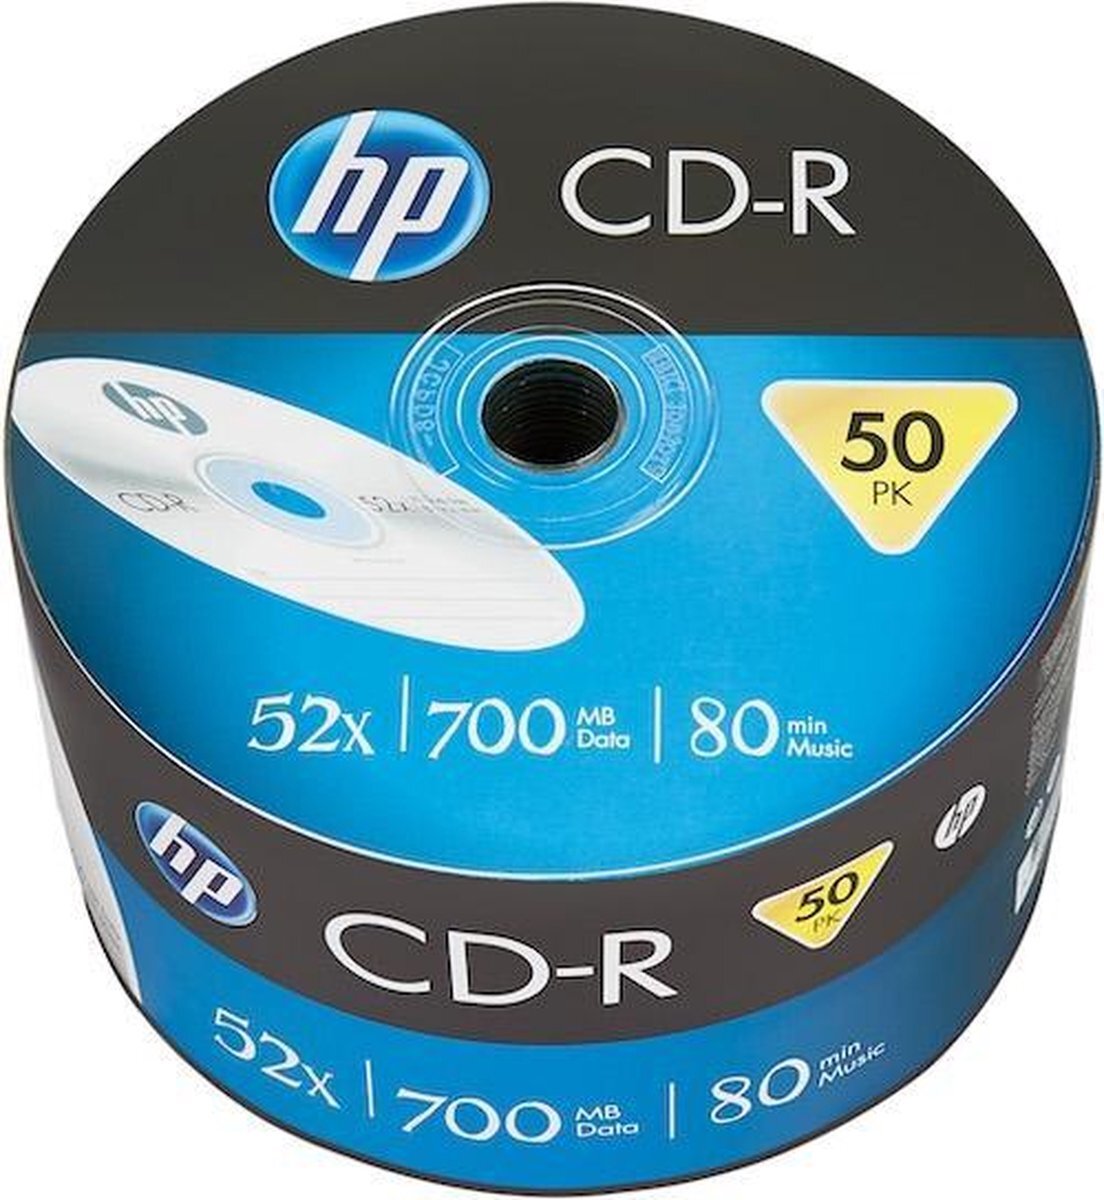 HP CD-R 700 MB 50 stuks